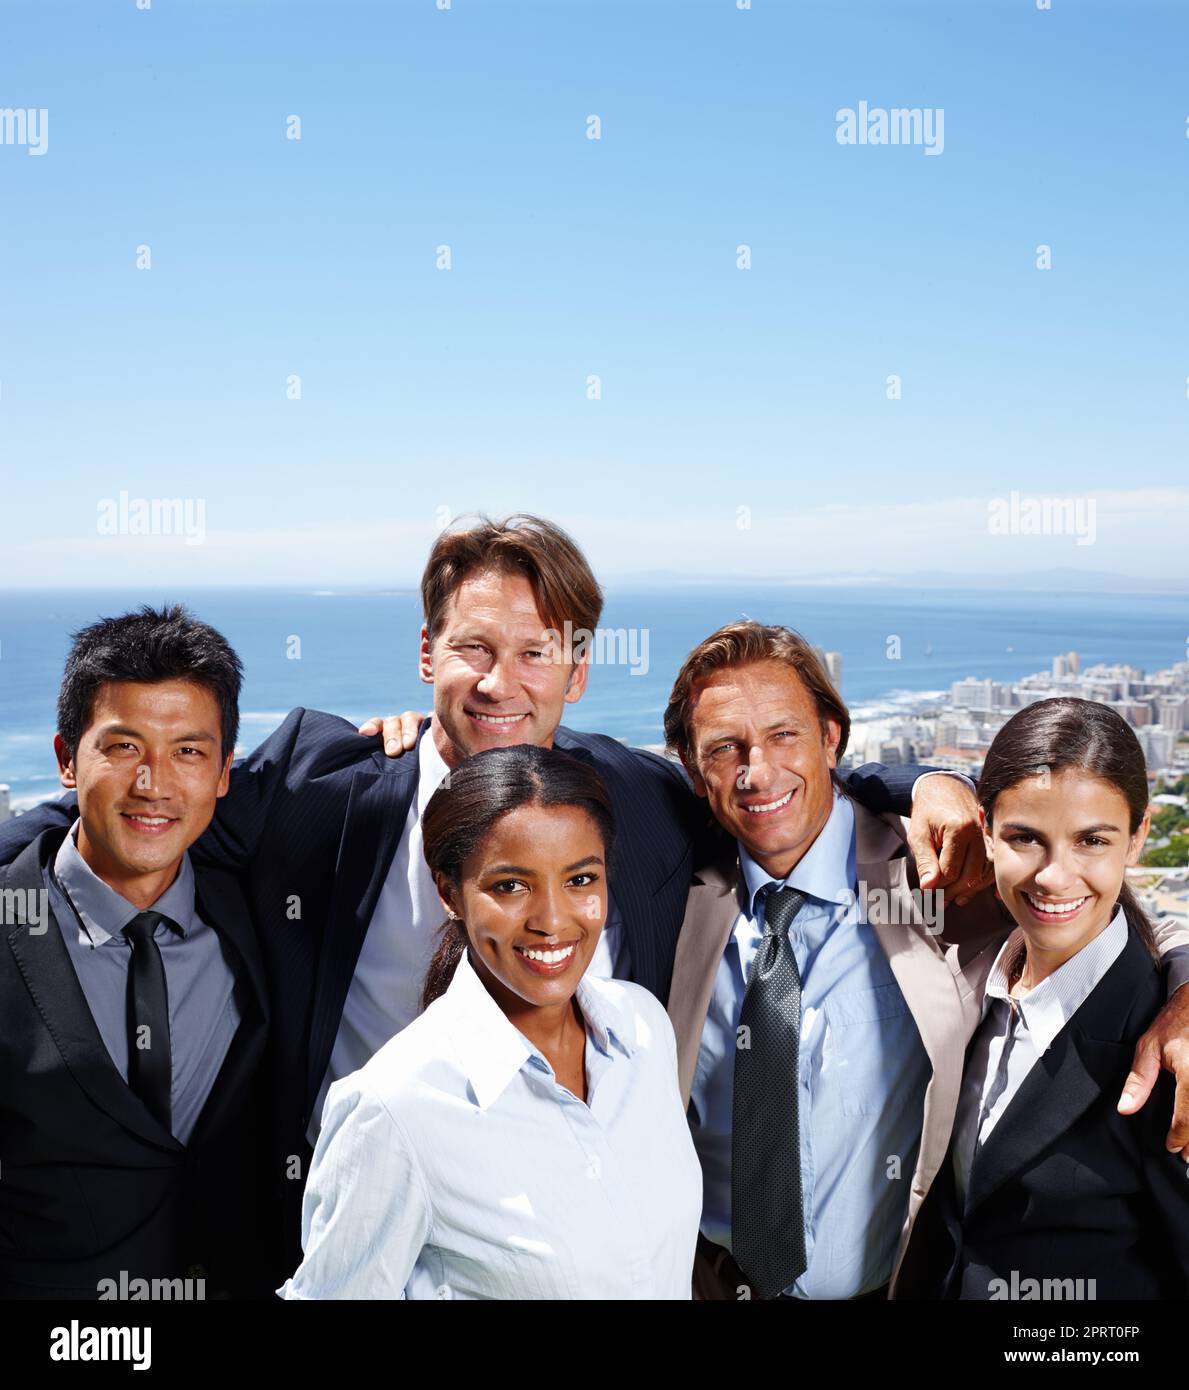 Formare nuovi legami nell'aria fresca. Foto di gruppo di gente sorridente d'affari con una città costiera sullo sfondo. Foto Stock